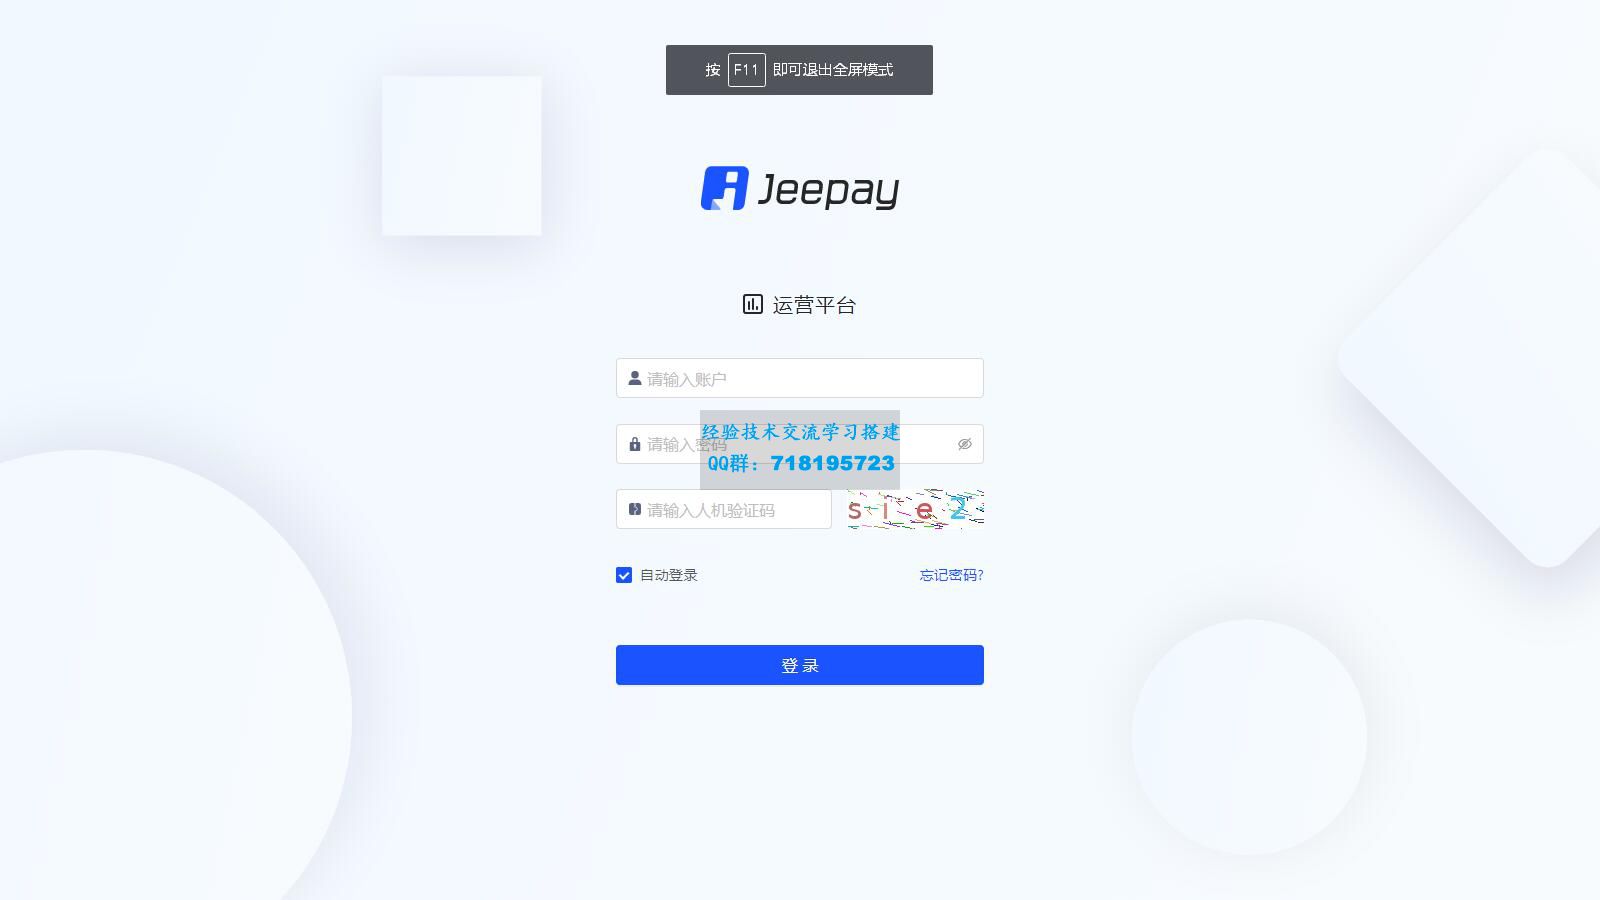     Jeepay开源支付系统 java语言开发的三方支付系统
